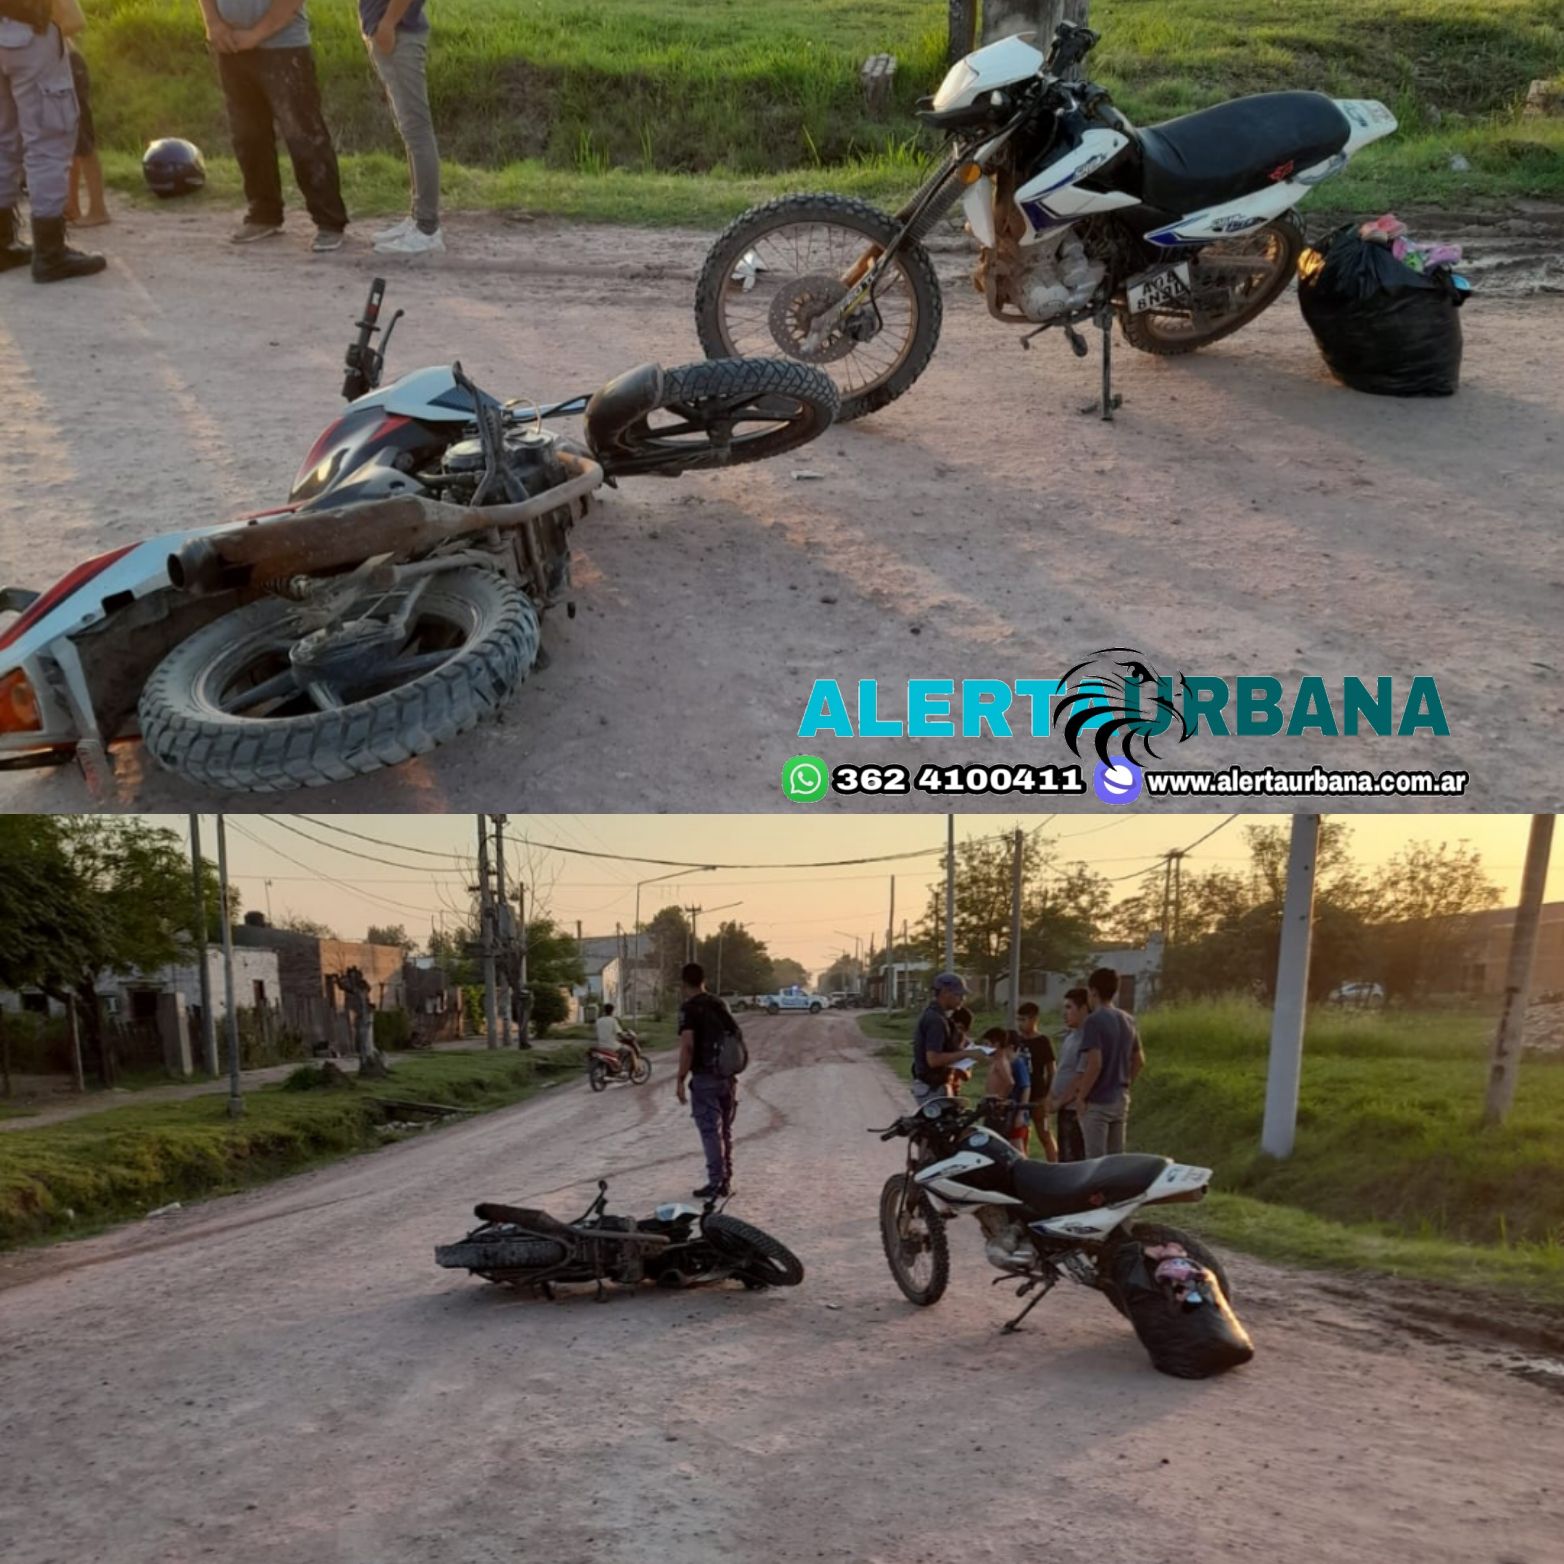 Tres adultos y una menor lesionados en un accidente de tránsito en Charata